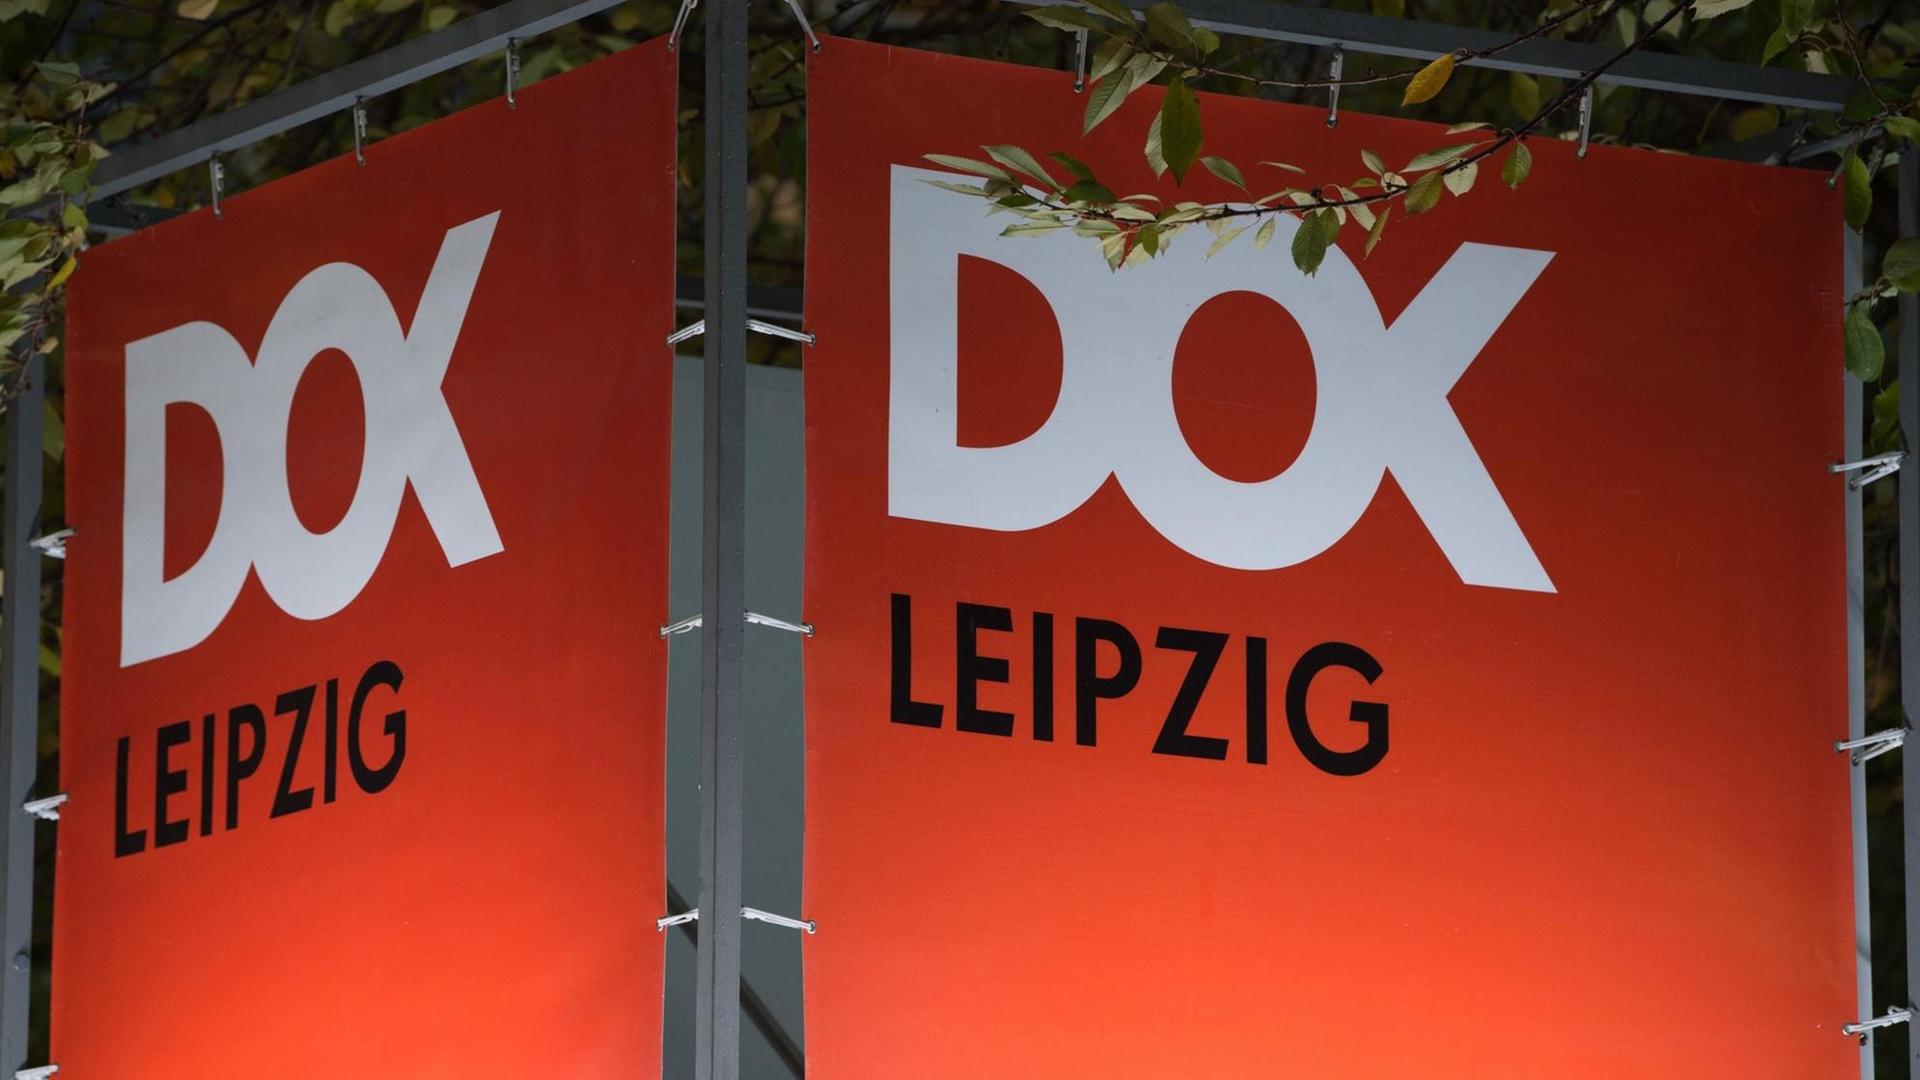 Ein Banner mit der Aufschrift "DOK Leipzig" hängt anlässlich des 61. Dokumentarfilm-Festivals DOK Leipzig in einer Fußgängerpassage.